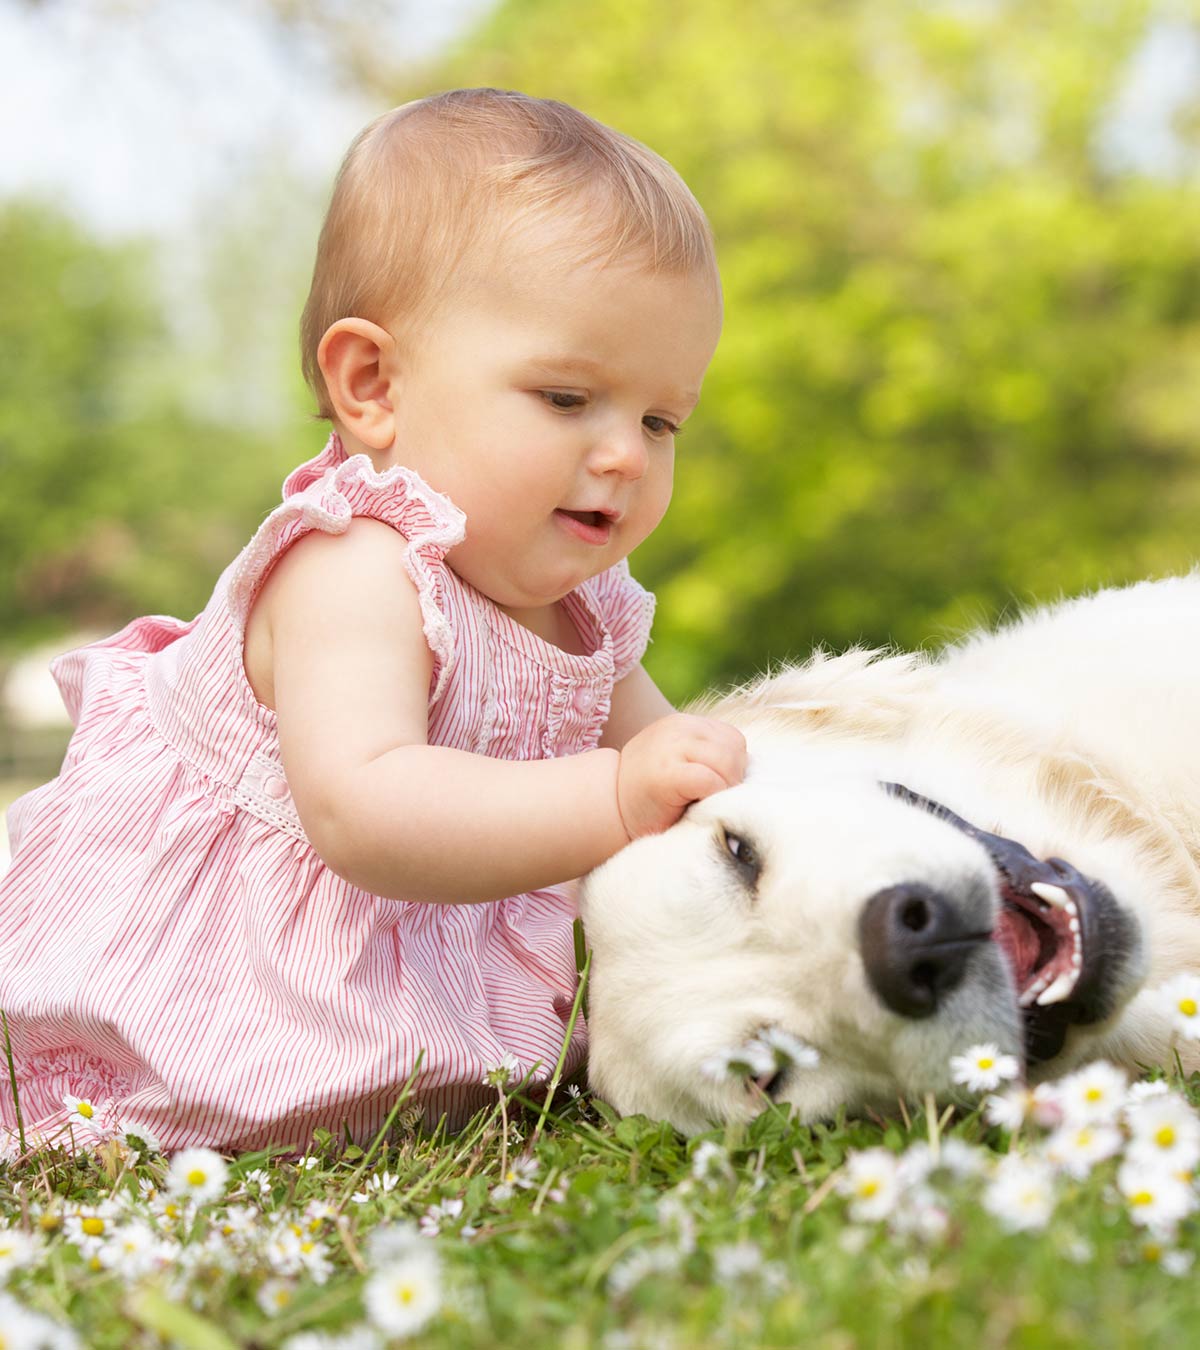 婴儿狗过敏:症状、原因、治疗和预防